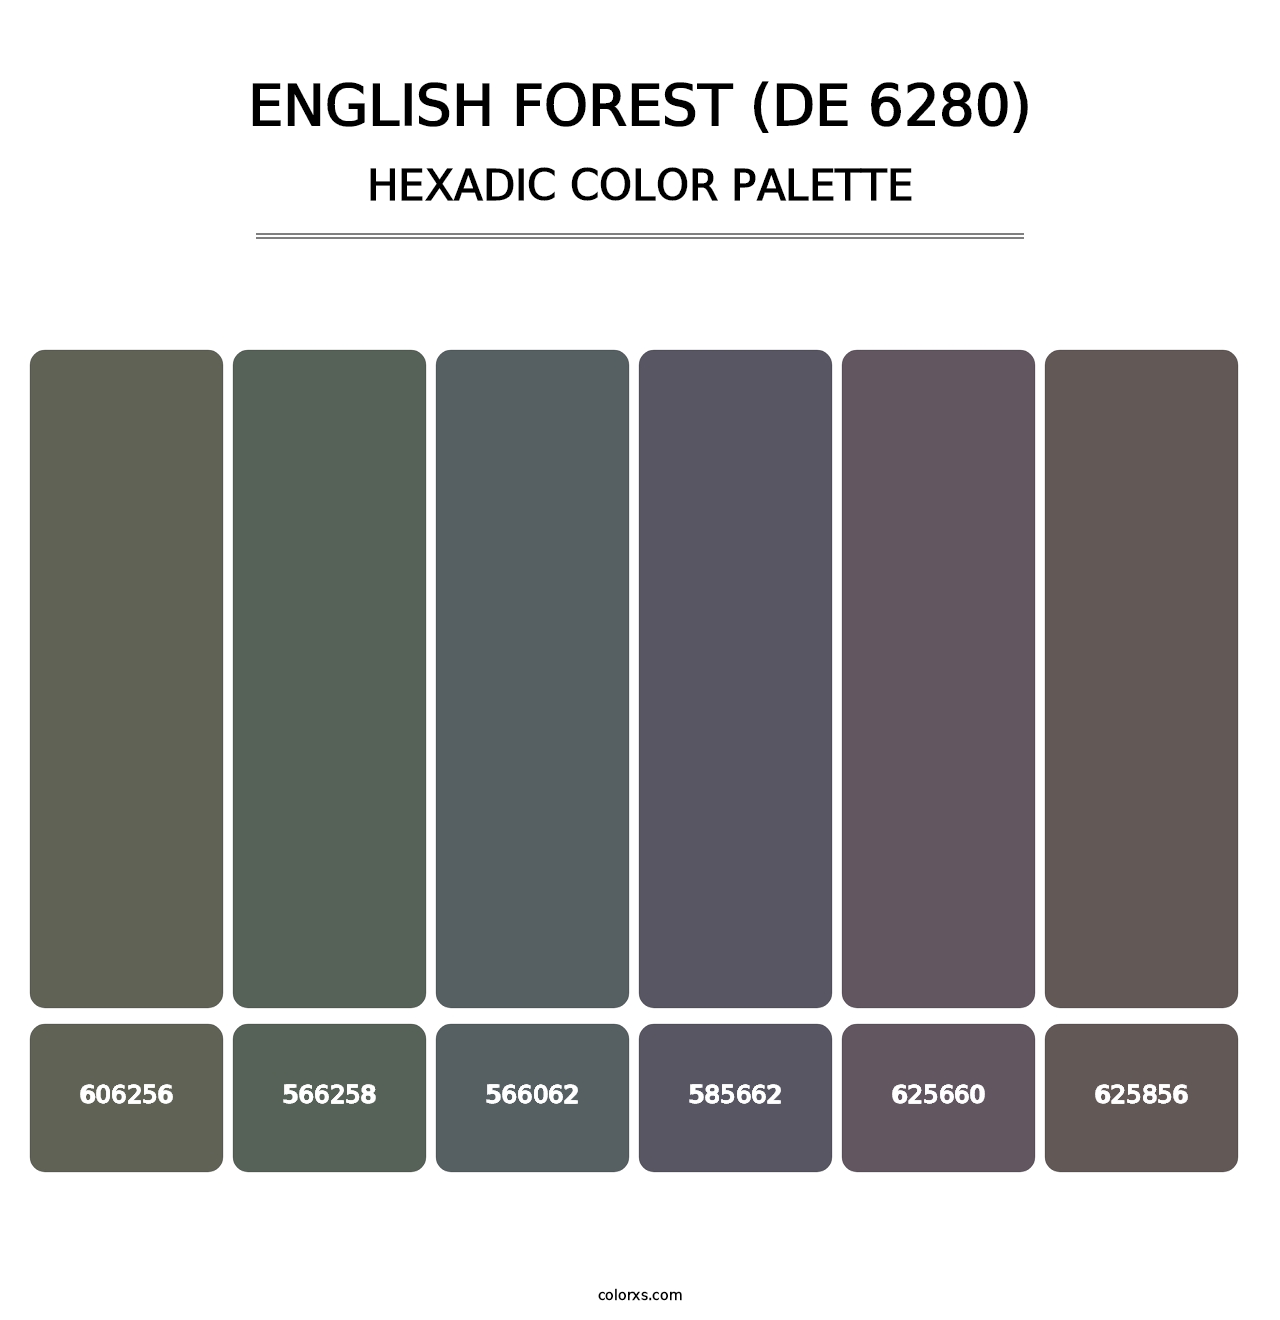 English Forest (DE 6280) - Hexadic Color Palette